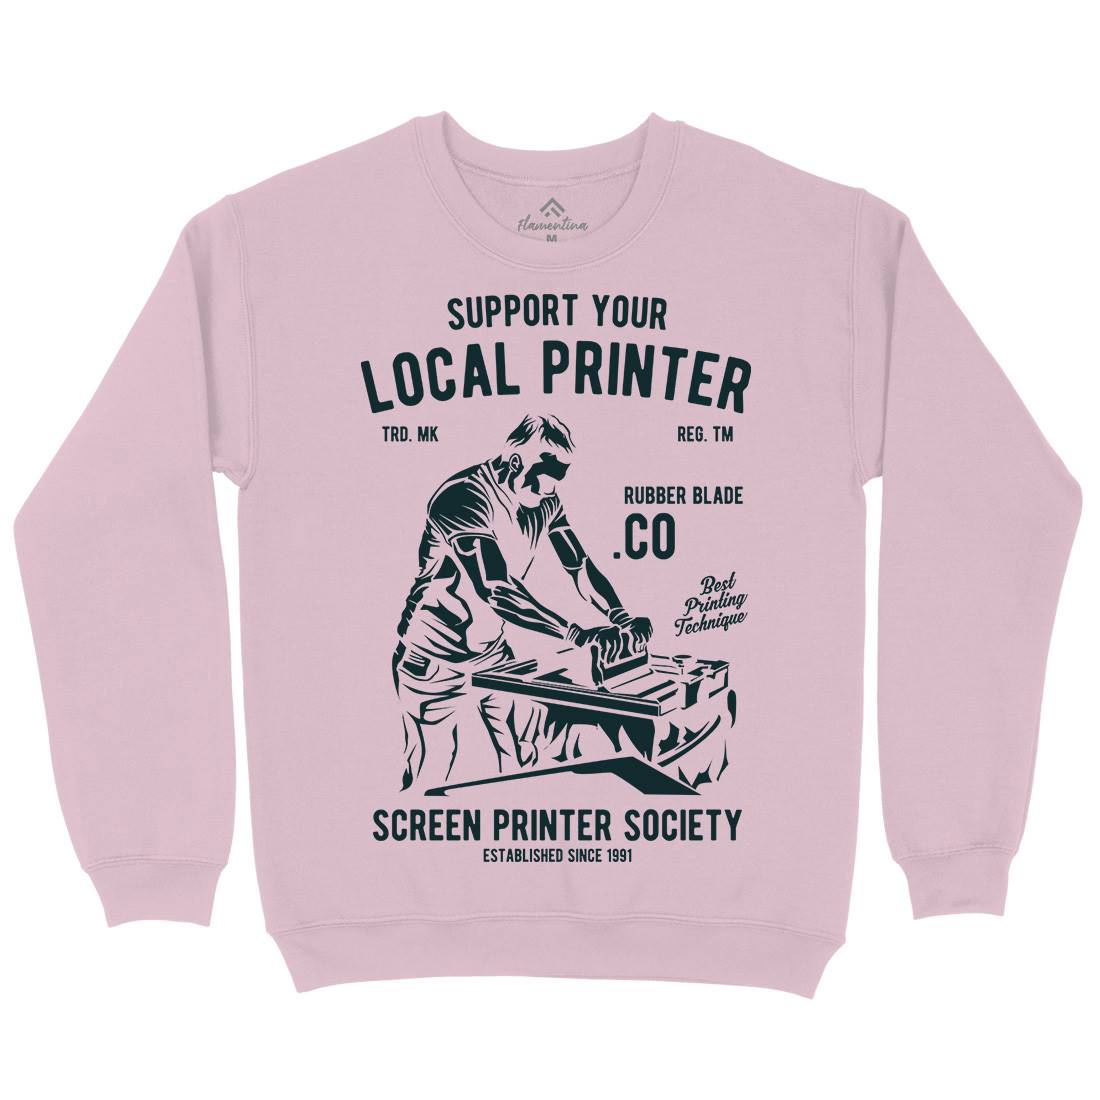 Local Printer Kids Crew Neck Sweatshirt Work A709